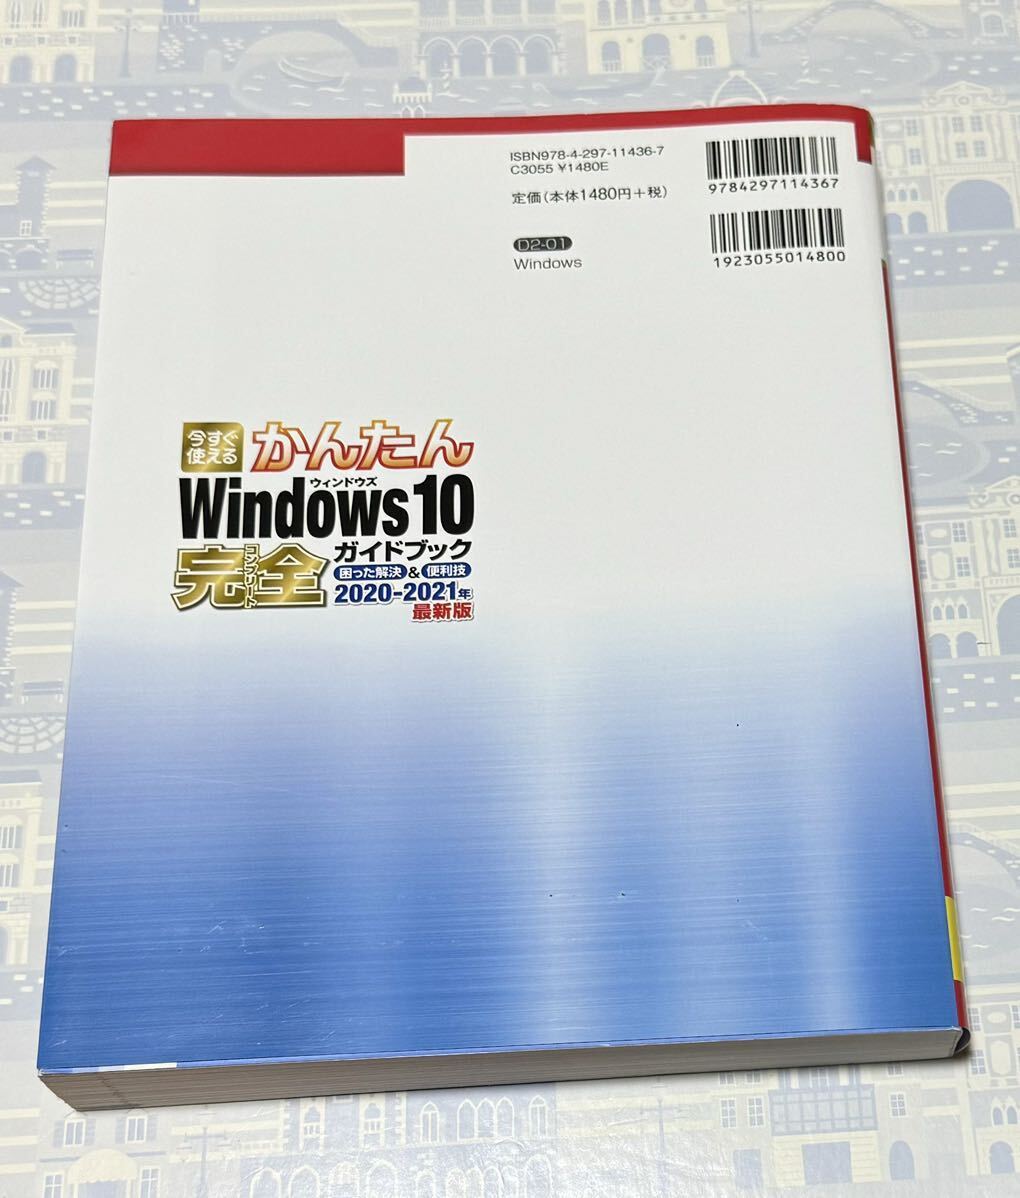  не использовался сейчас сразу можно использовать простой Windows10 совершенно путеводитель 2020-2021 год новейший версия 